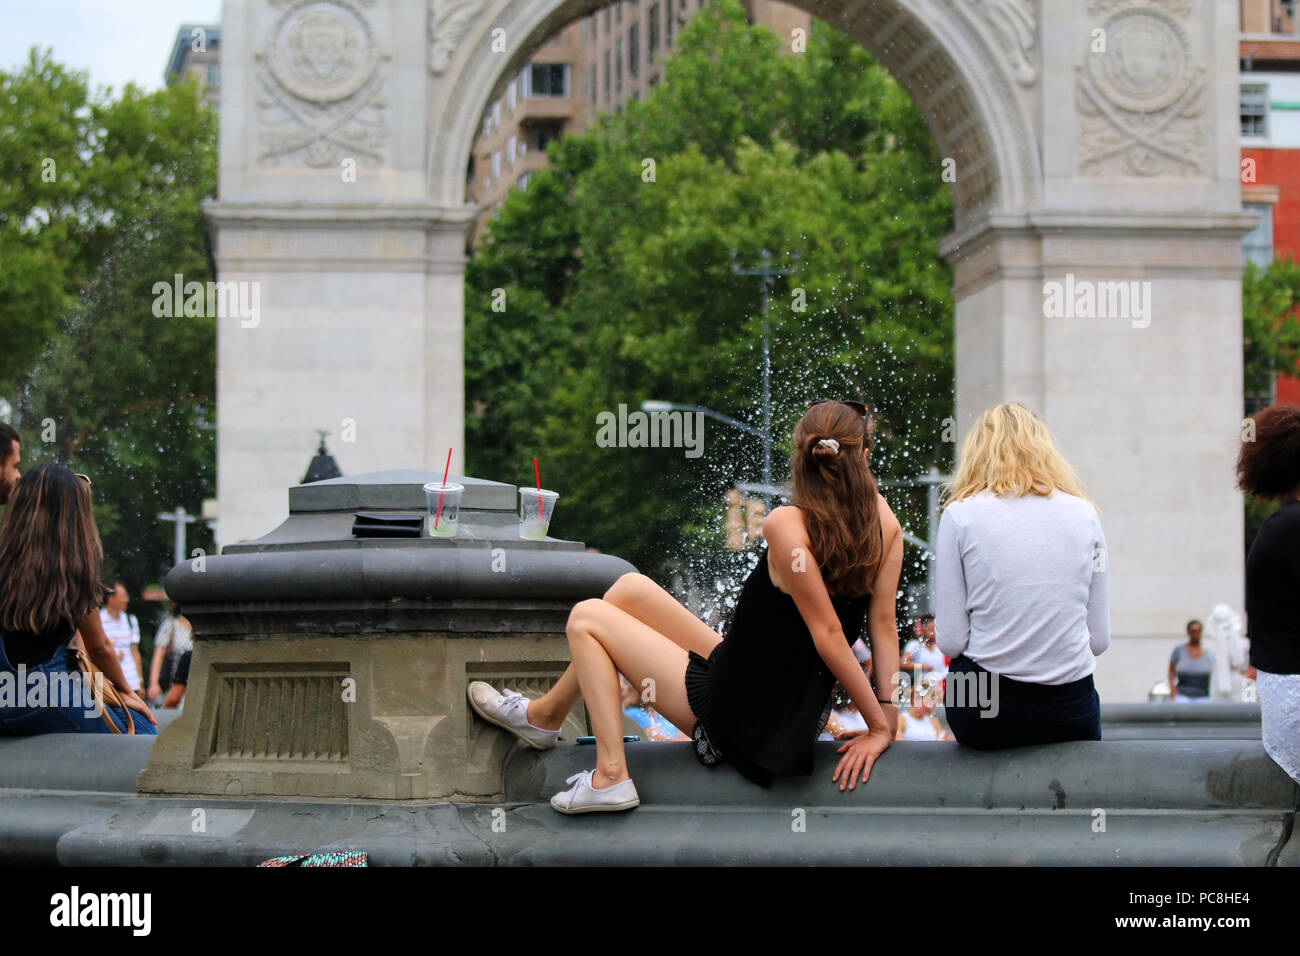 NEW YORK, NY - 10 juillet : les jeunes femmes s'asseoir sur un rebord d'une fontaine de Washington Square Park à Manhattan le 10 juillet 2017 à New York, USA. Banque D'Images